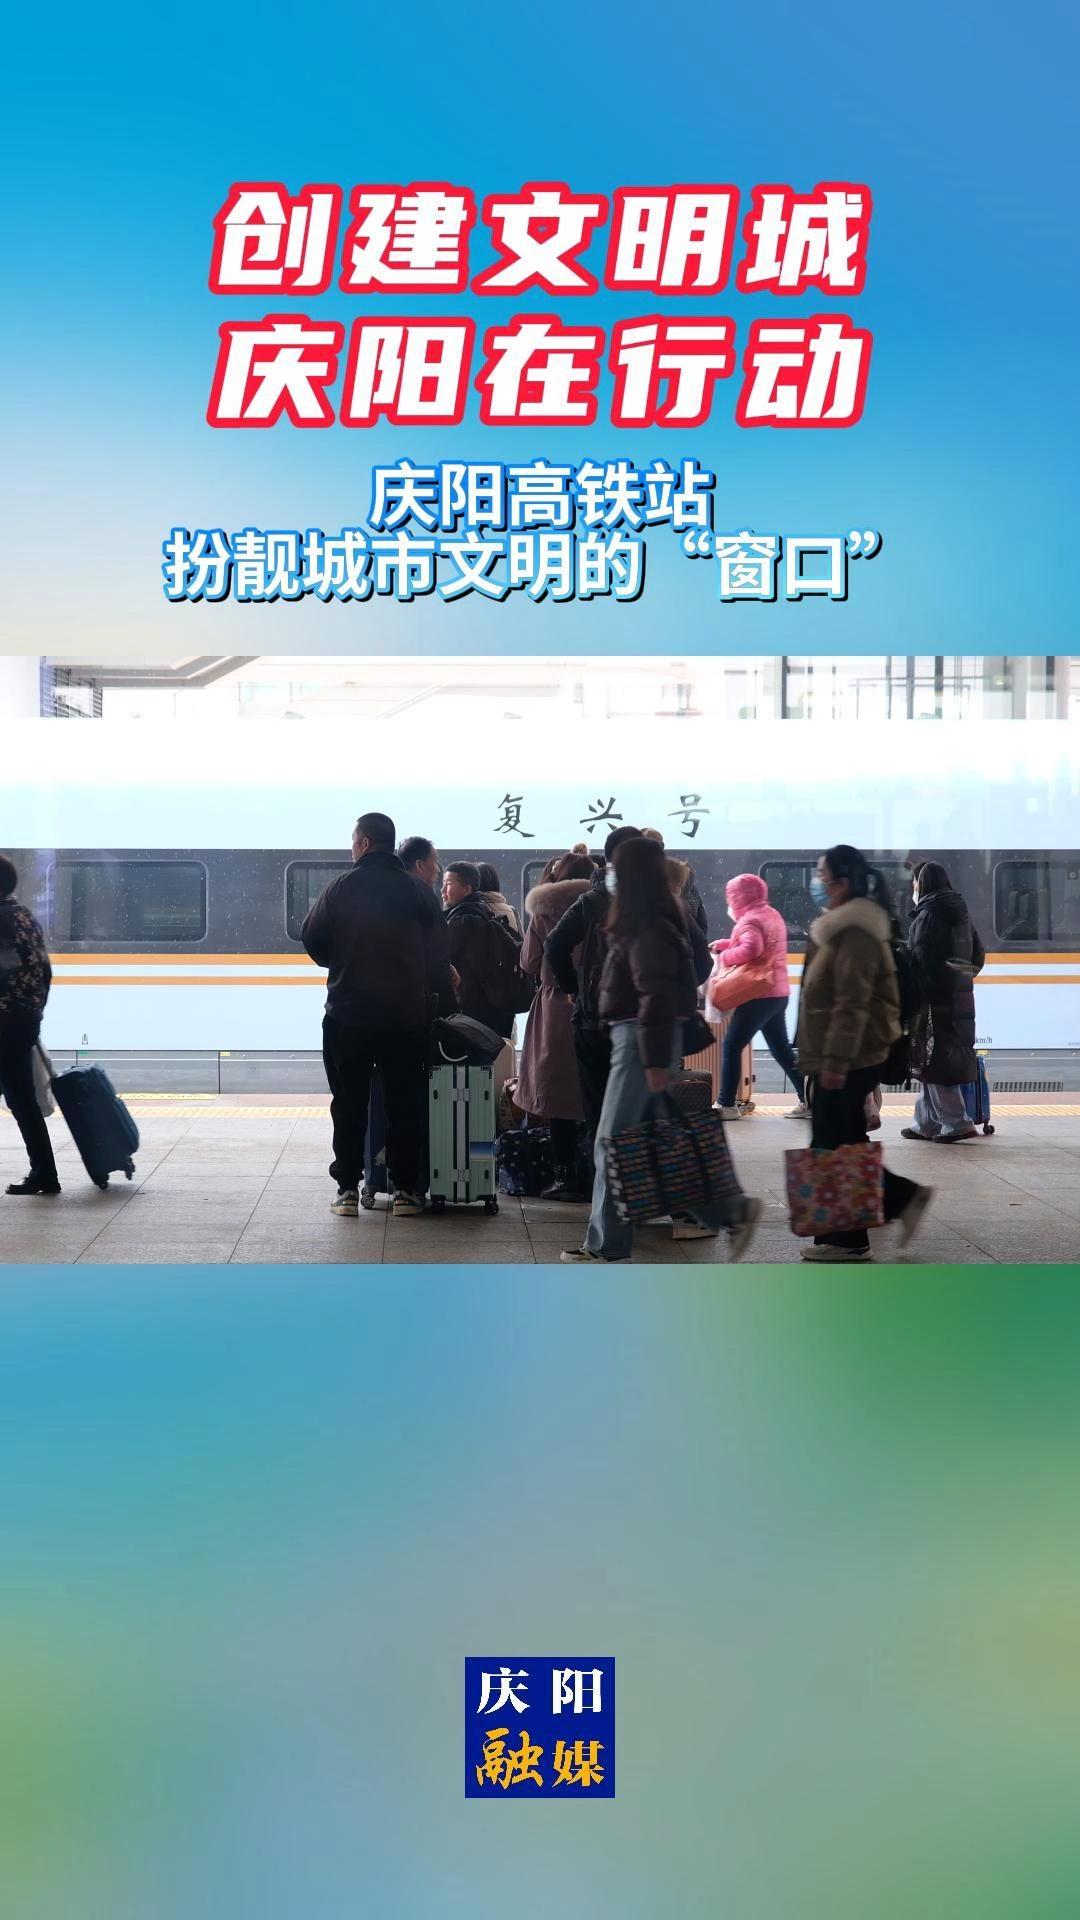 【创建文明城•庆阳在行动】庆阳高铁站：扮靓城市文明的“窗口”